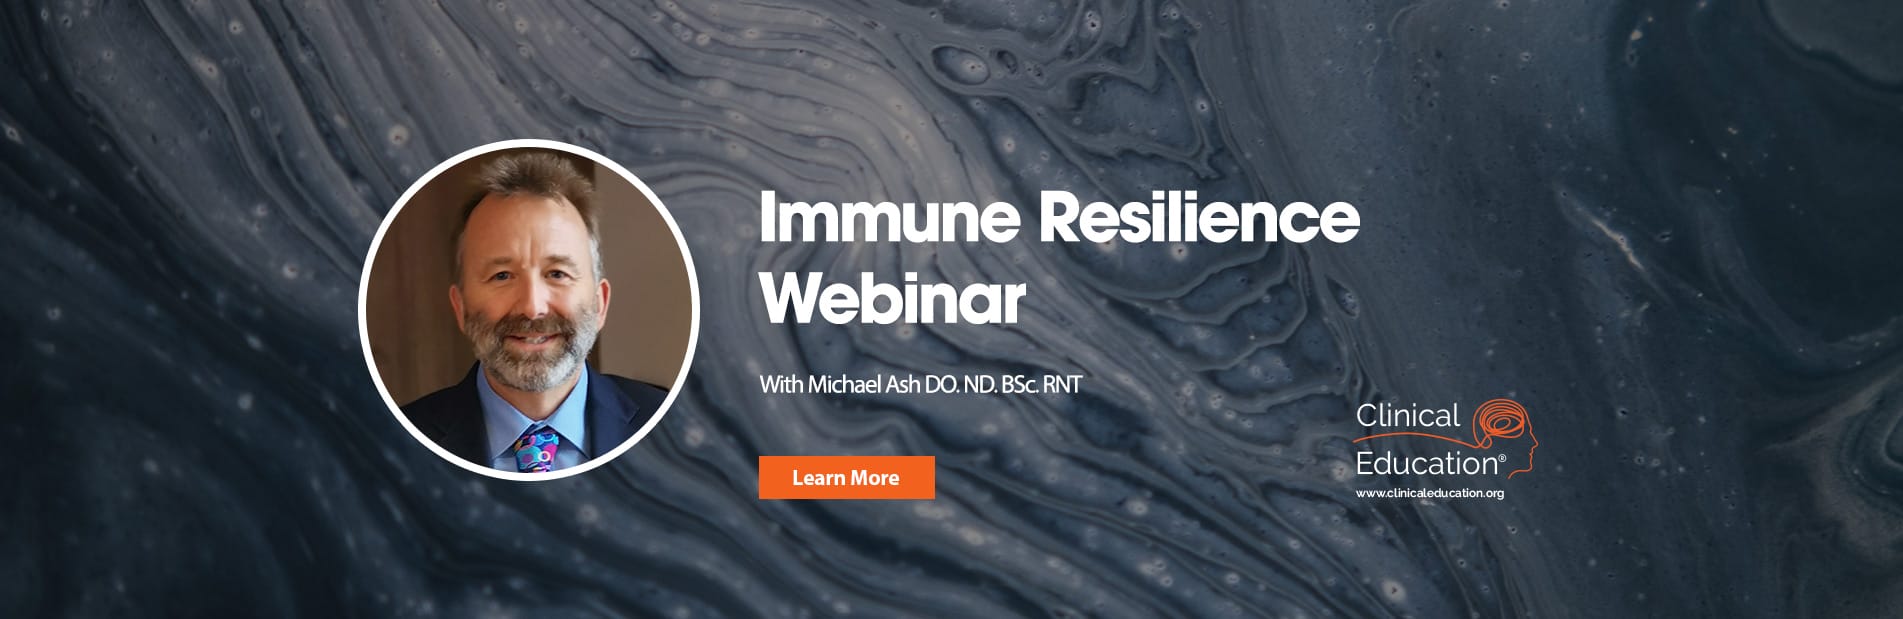 MA-immune-resilience-webinar-slider